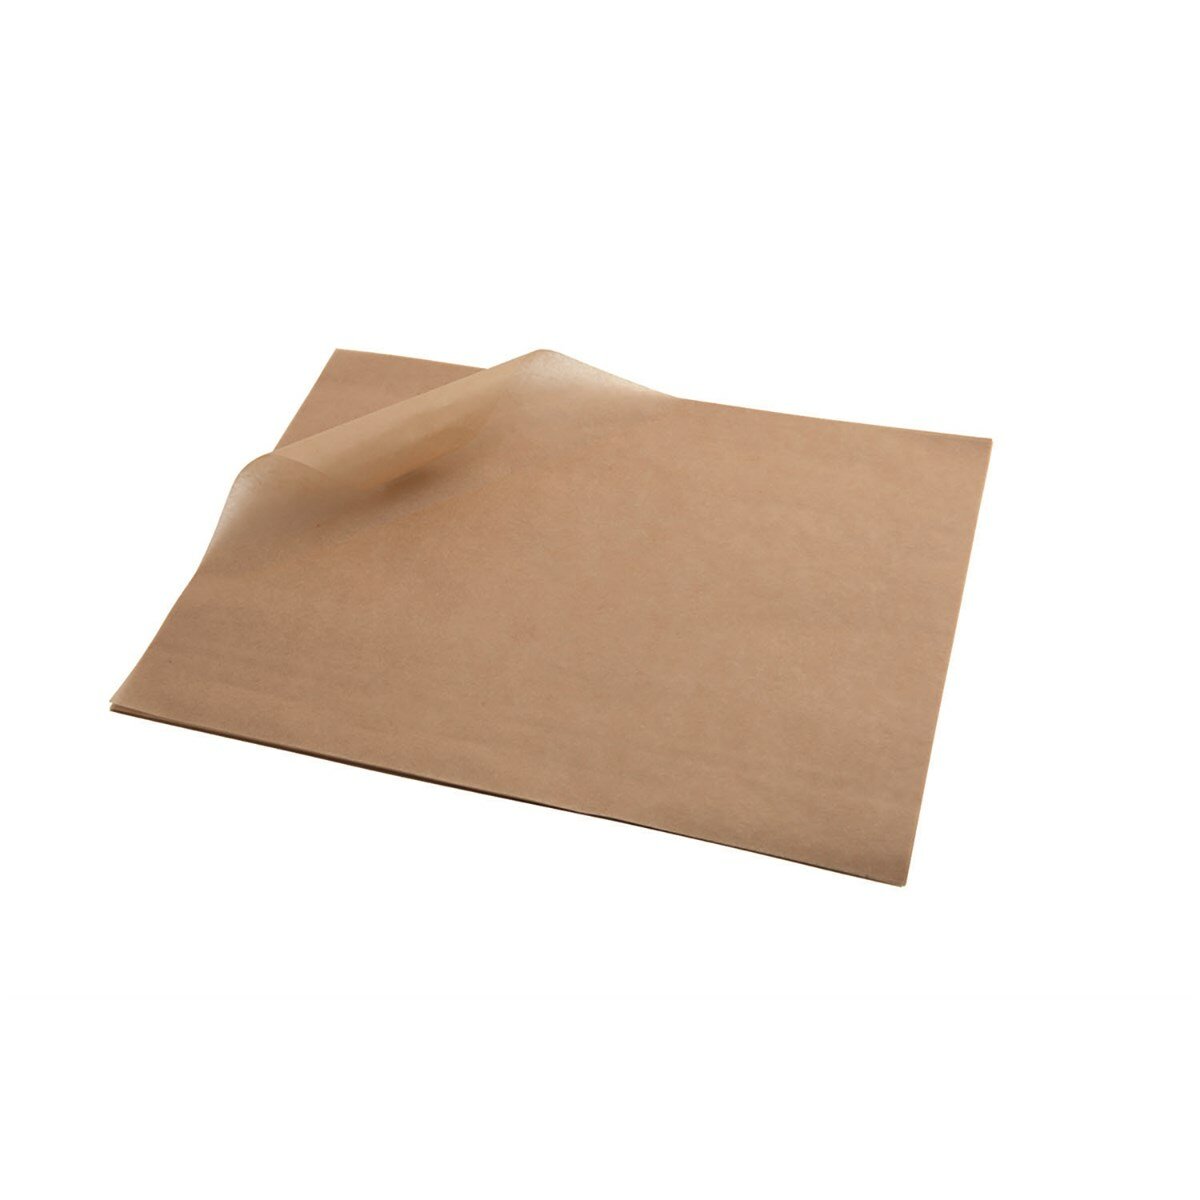 Бумага для выпечки в листах, подпергамент, 16 листов, размер 38*42 см, в ПВХ уп.